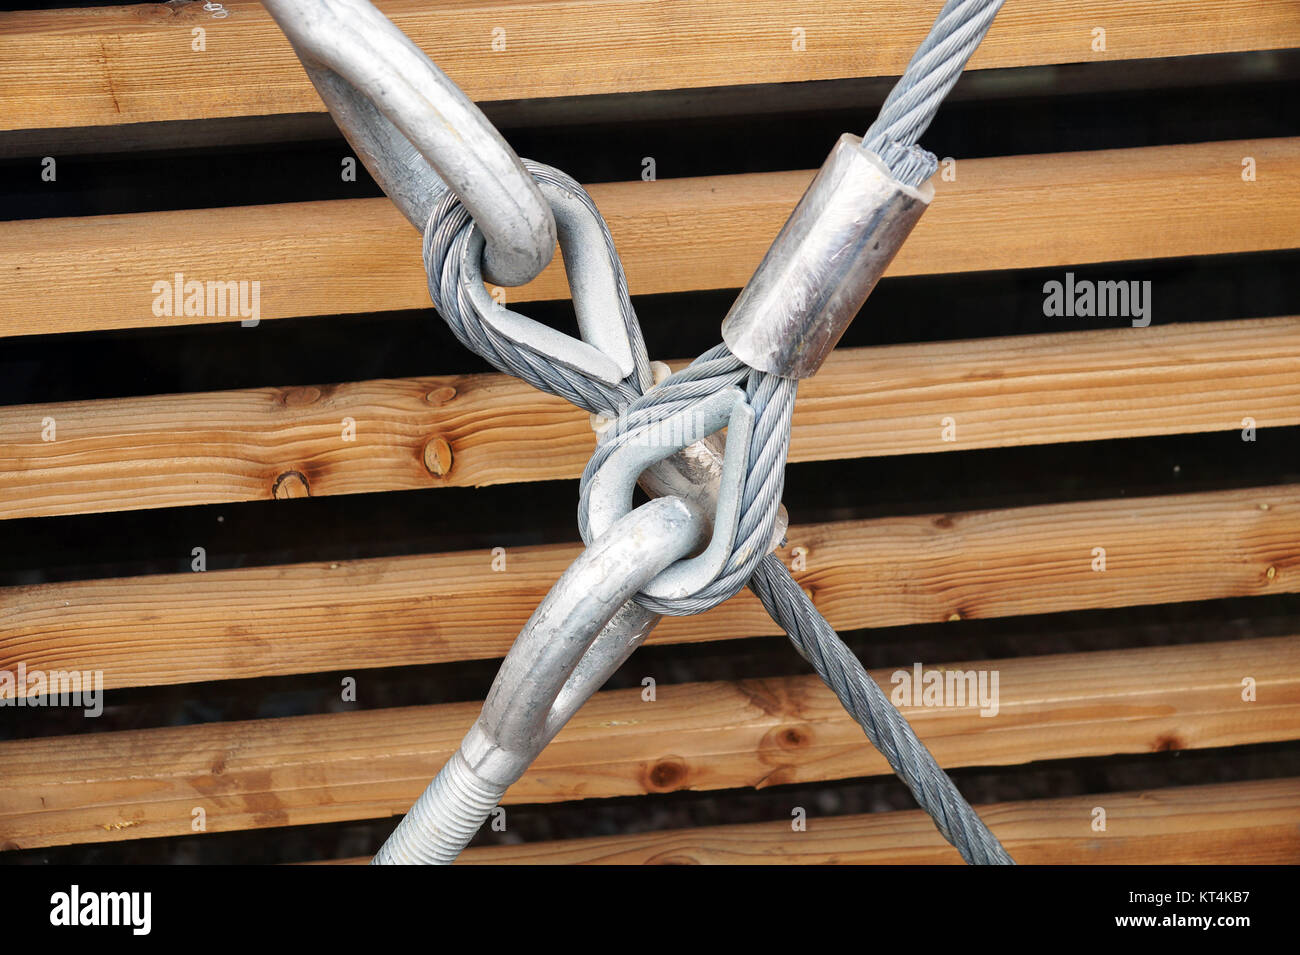 Stahl Spannschloss mit Haken und Öse zur Befestigung mit Metall Kabel  Stockfotografie - Alamy